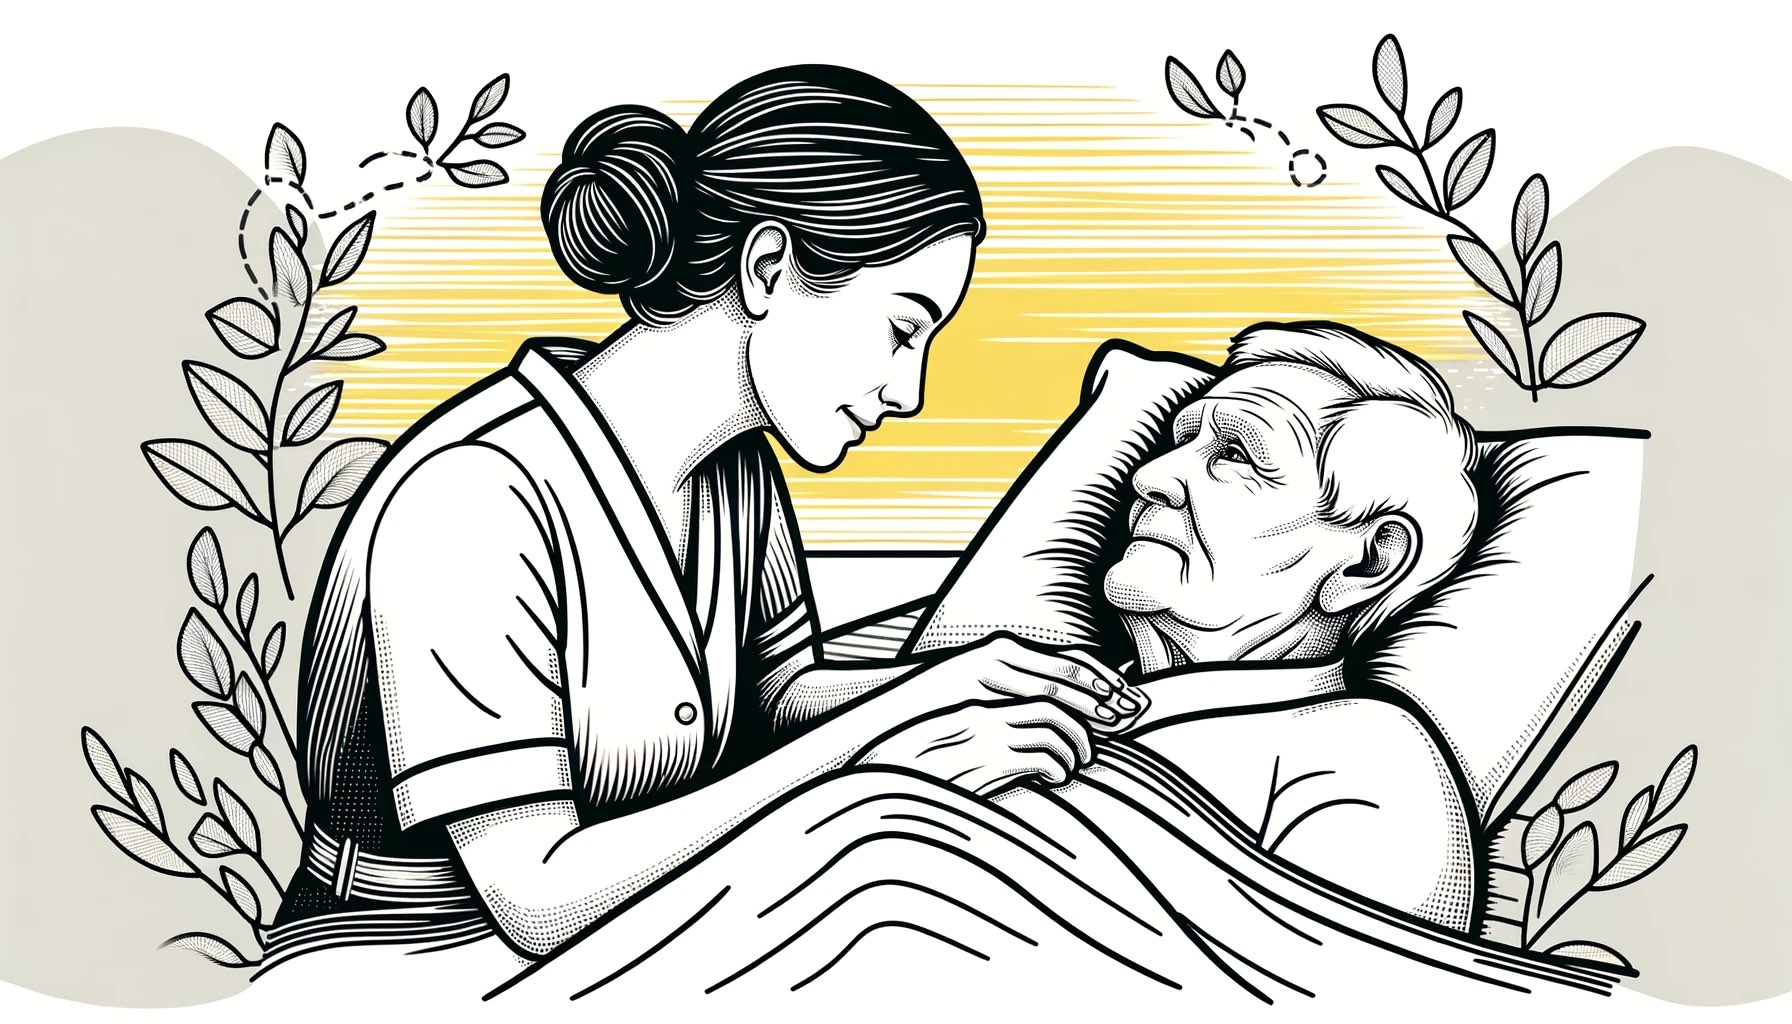 Tedere scène van een oudere man in de ernstige fase van dementie die in bed ligt, verzorgd door een verpleegster die zijn deken aanpast. De compassievolle zorg van de verpleegster wordt benadrukt met gele accenten op haar handen, wat warmte en toegewijde ondersteuning symboliseert in een vredige omgeving